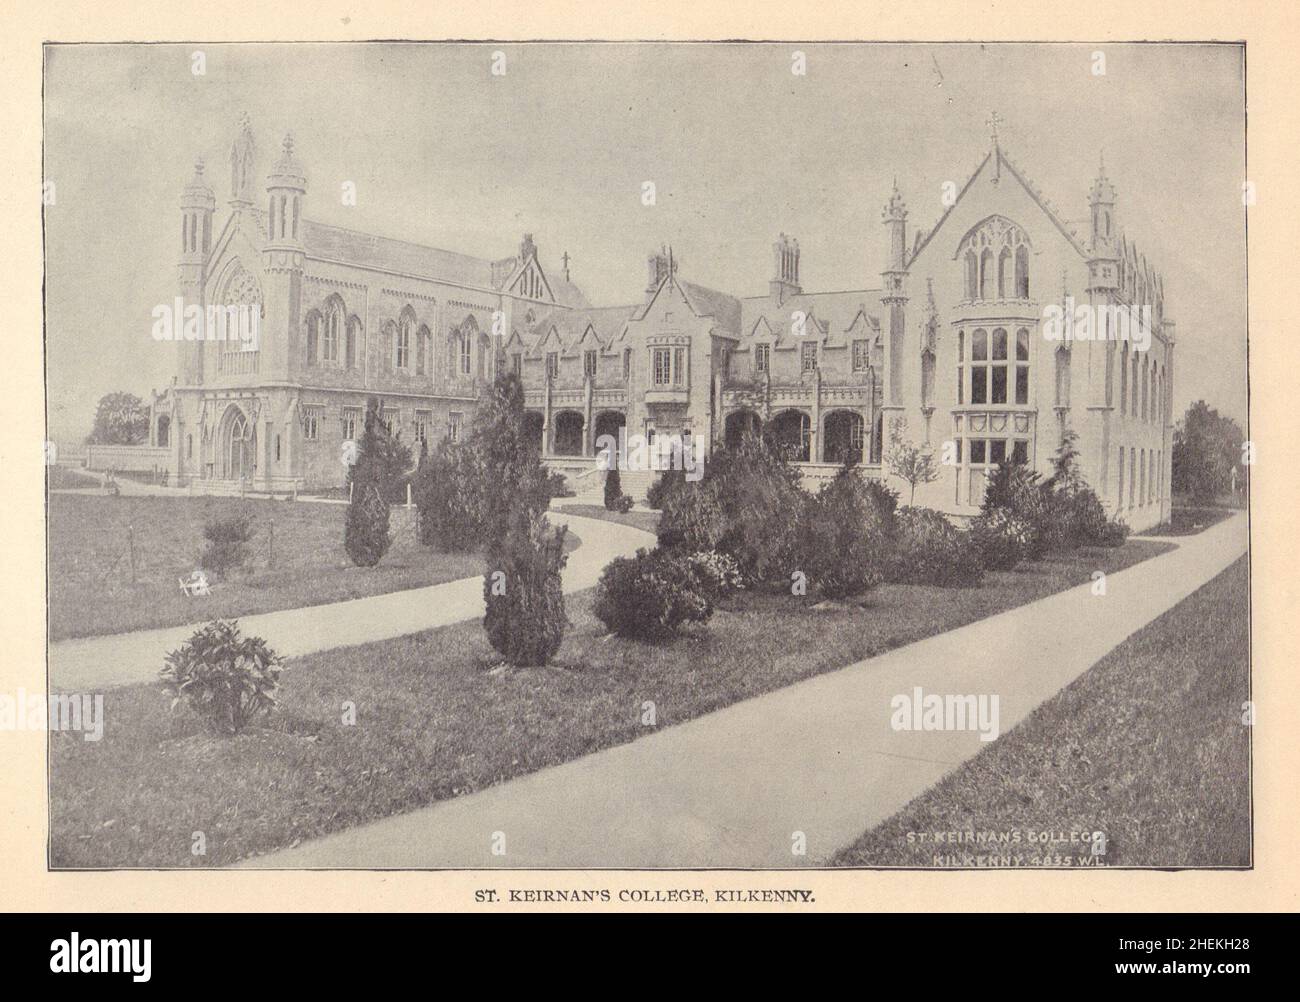 St. Keirnan's College, Kilkenny.Irlande 1905 ancienne image imprimée Banque D'Images